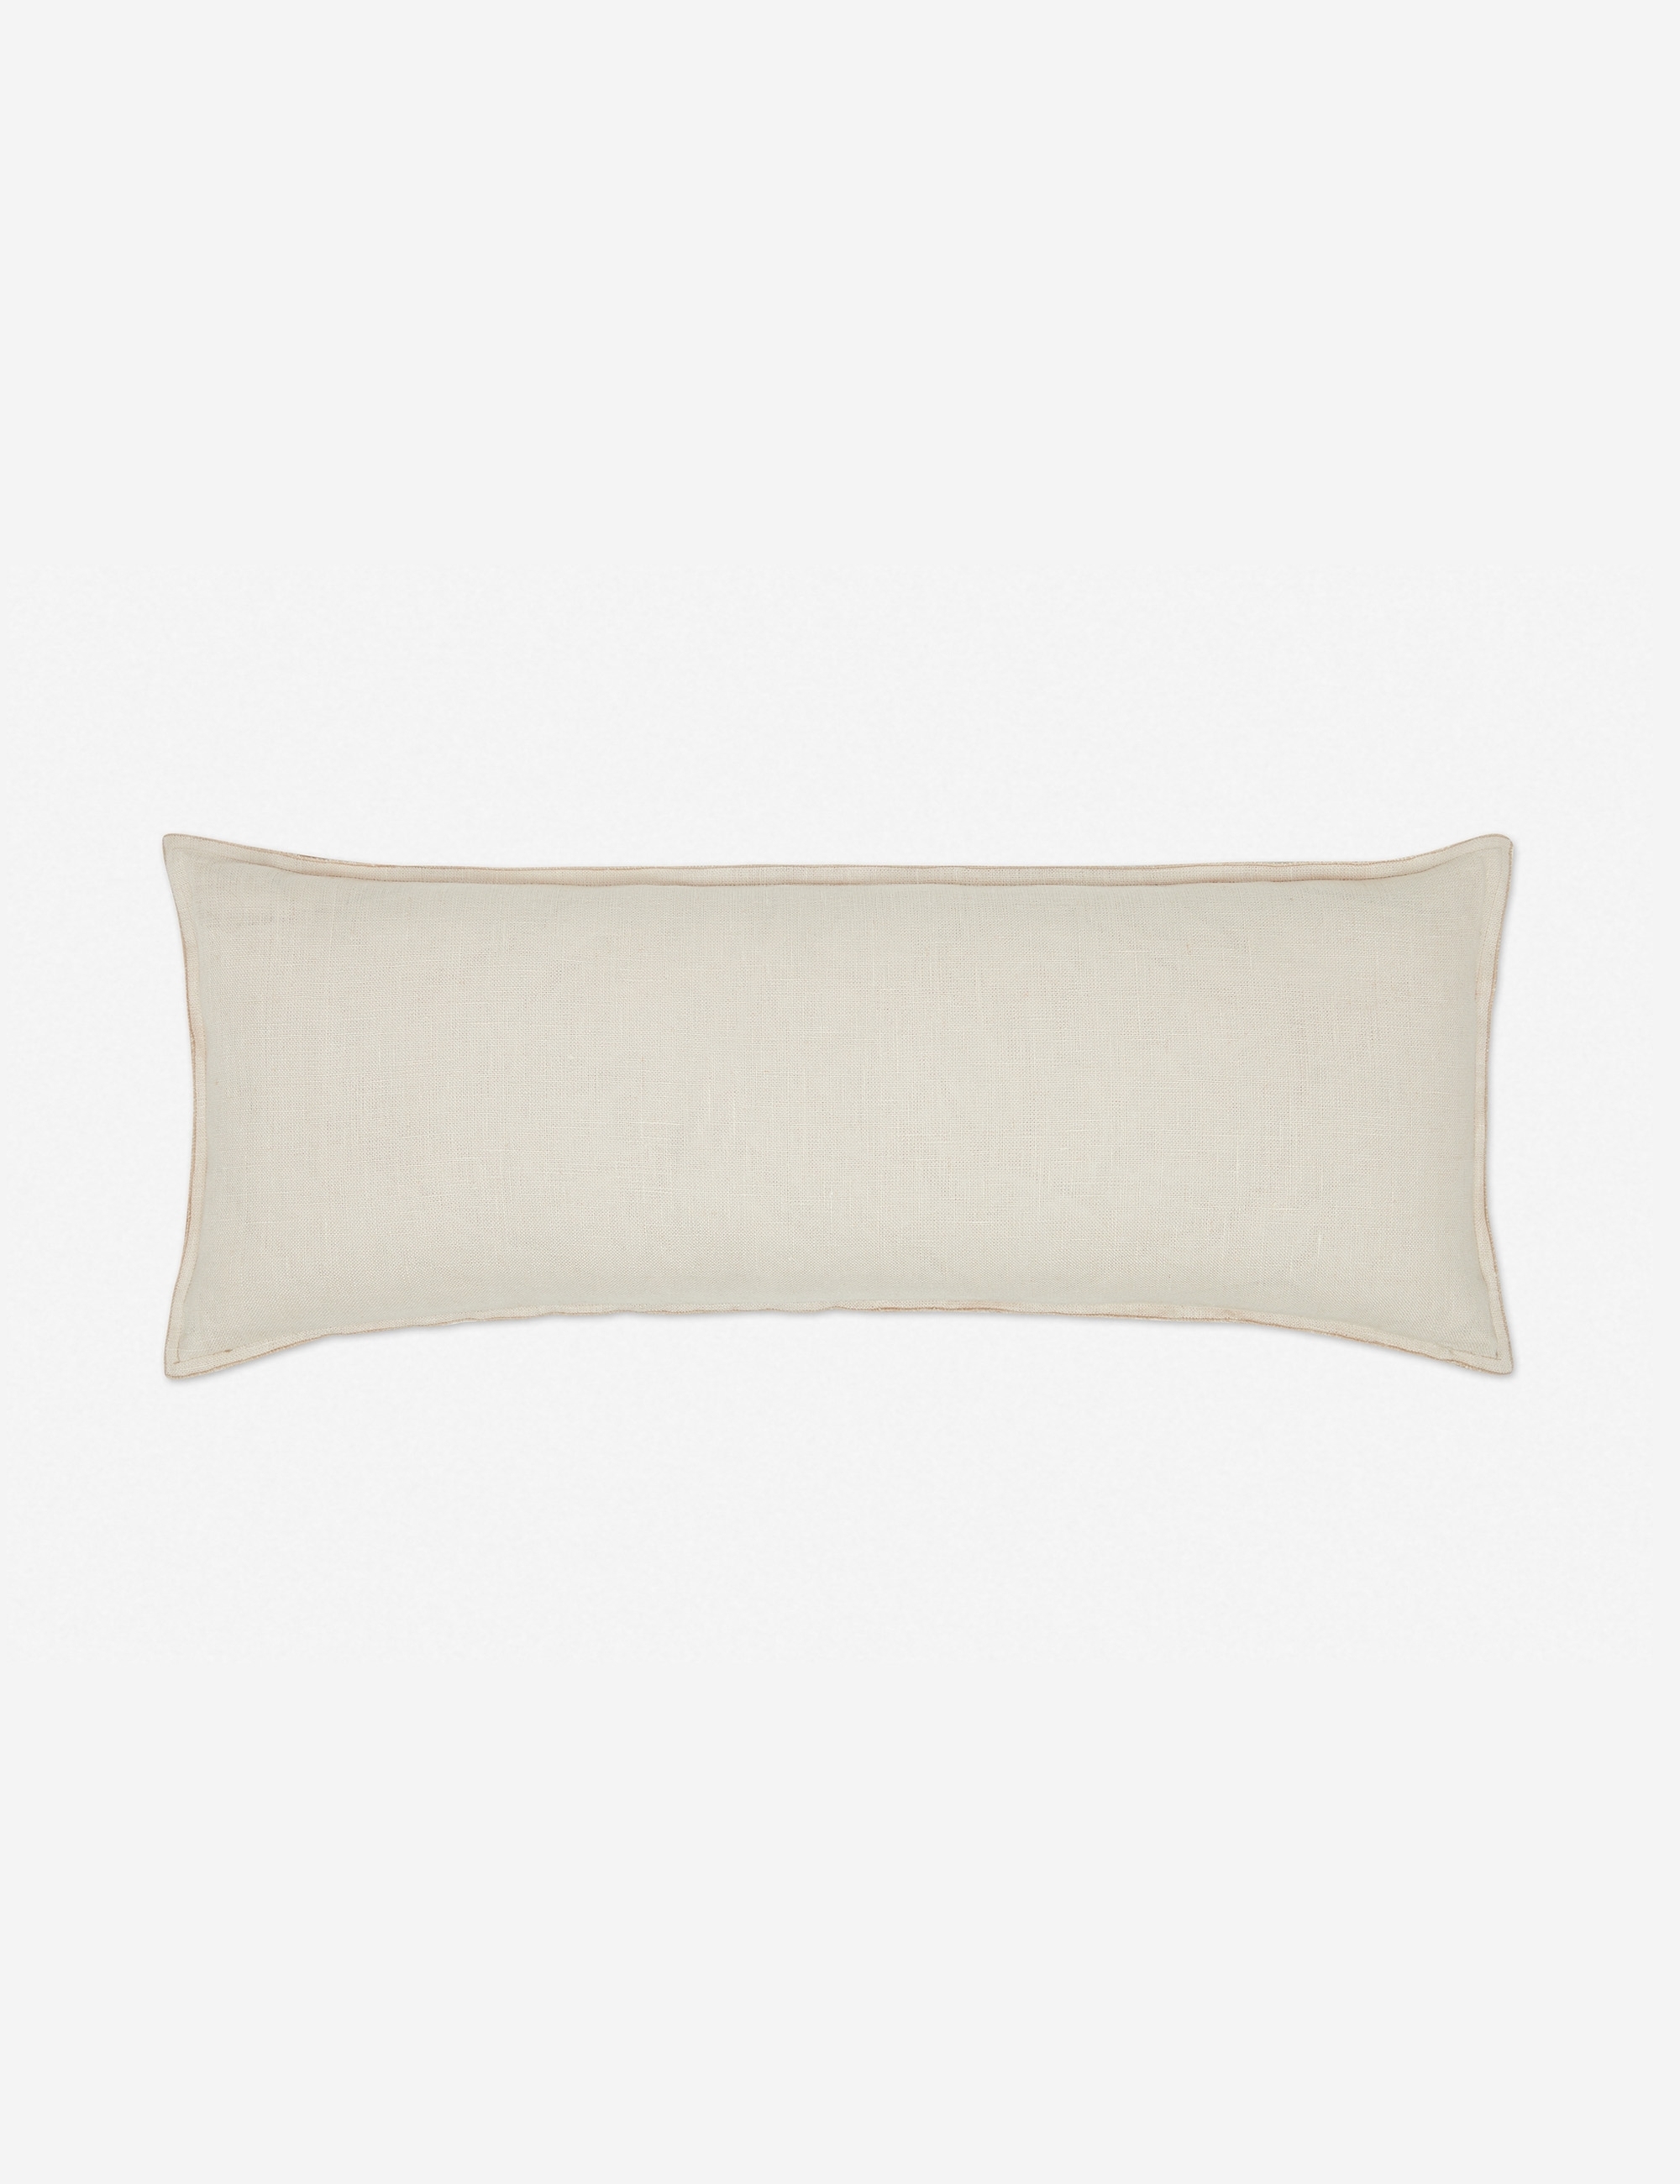 Arlo Linen Long Lumbar Pillow, Light Natural, 36" x 14" - Image 0